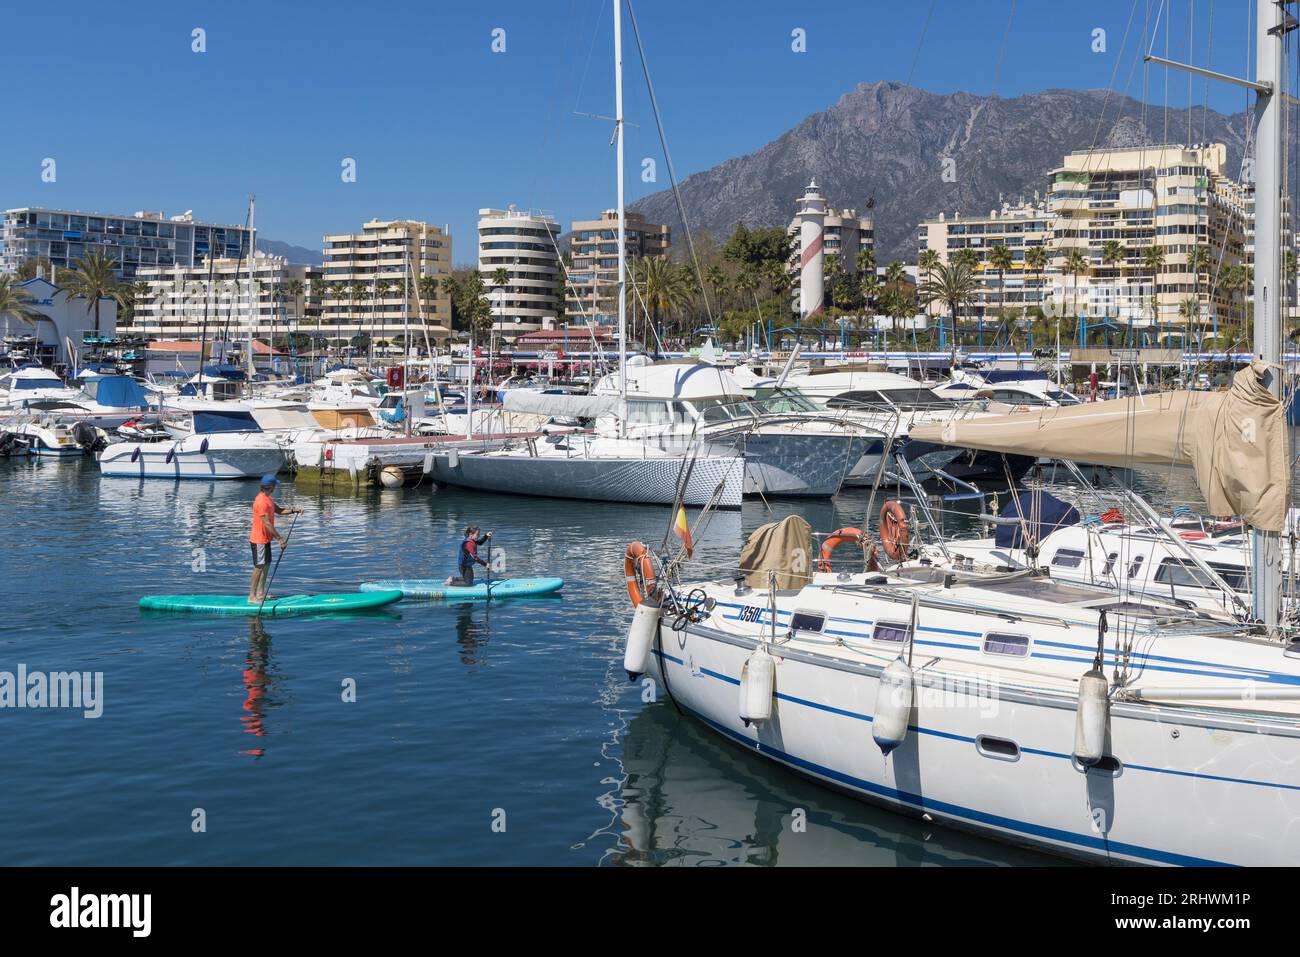 Puerto Deportivo oder Sporthafen am Ufer der Stadt Marbella. Marbella, Costa del Sol, Provinz Malaga, Andalusien, Südspanien. Mann und Kind Stockfoto